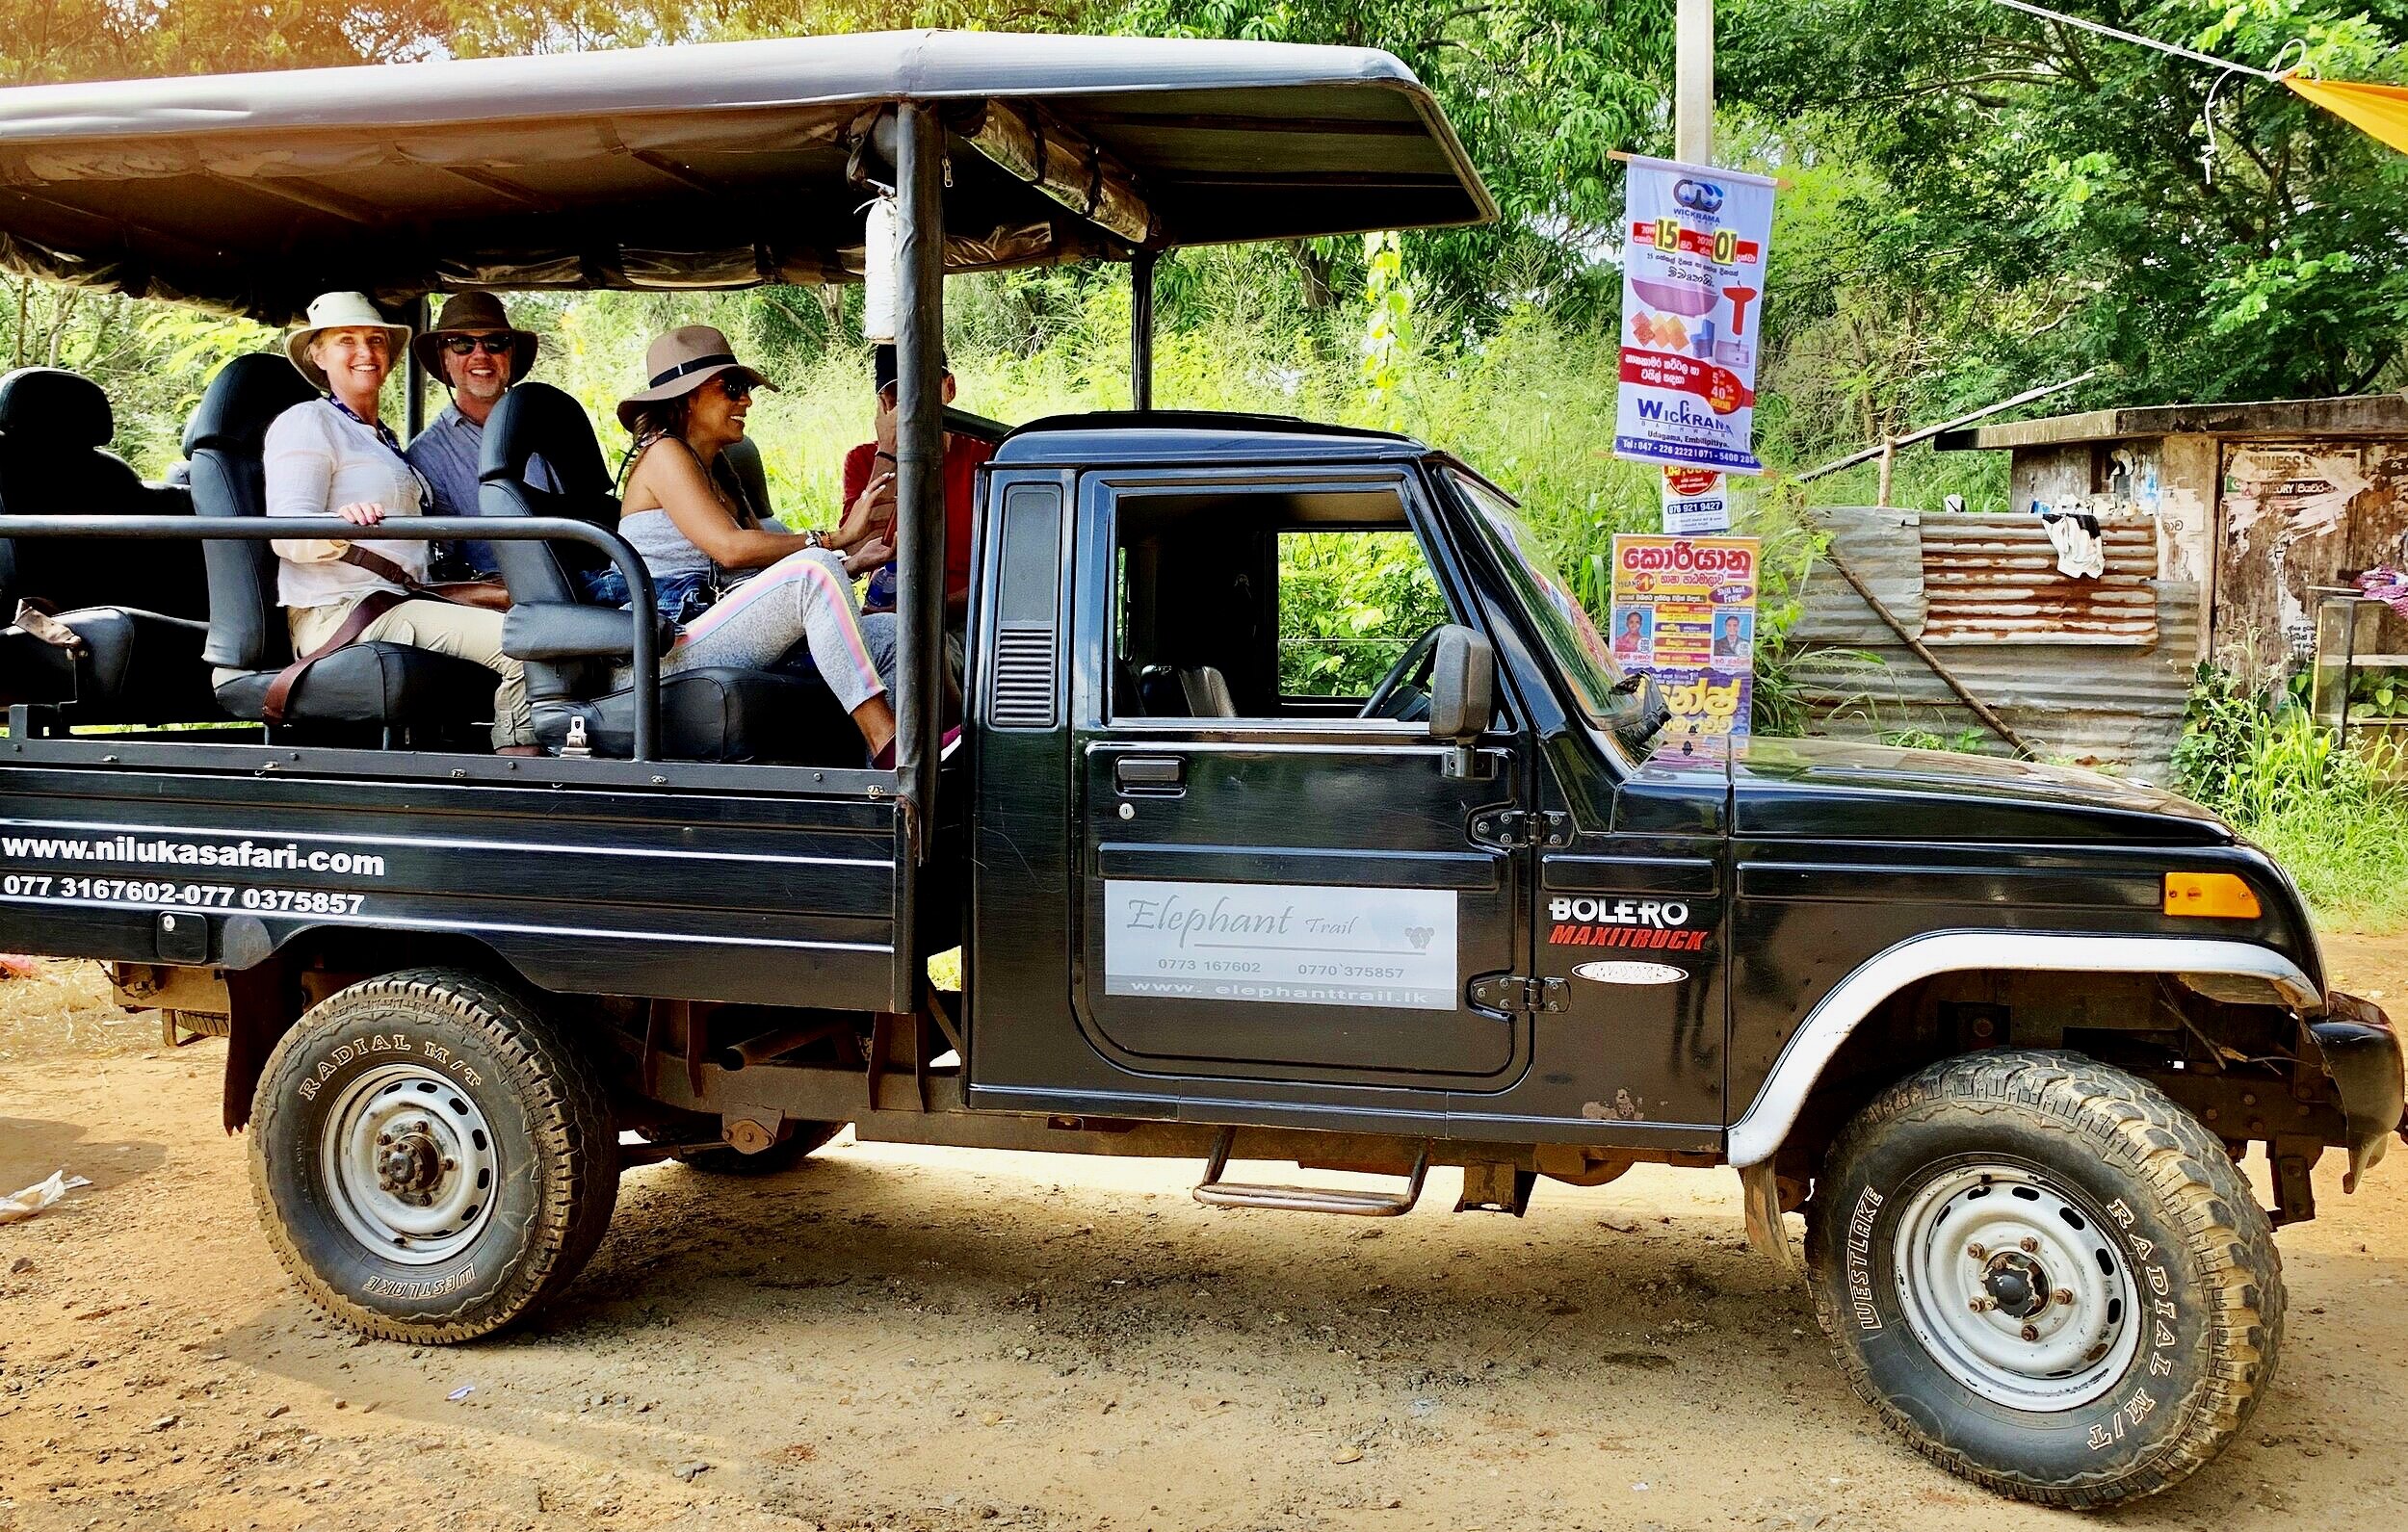 Our safari jeep. 